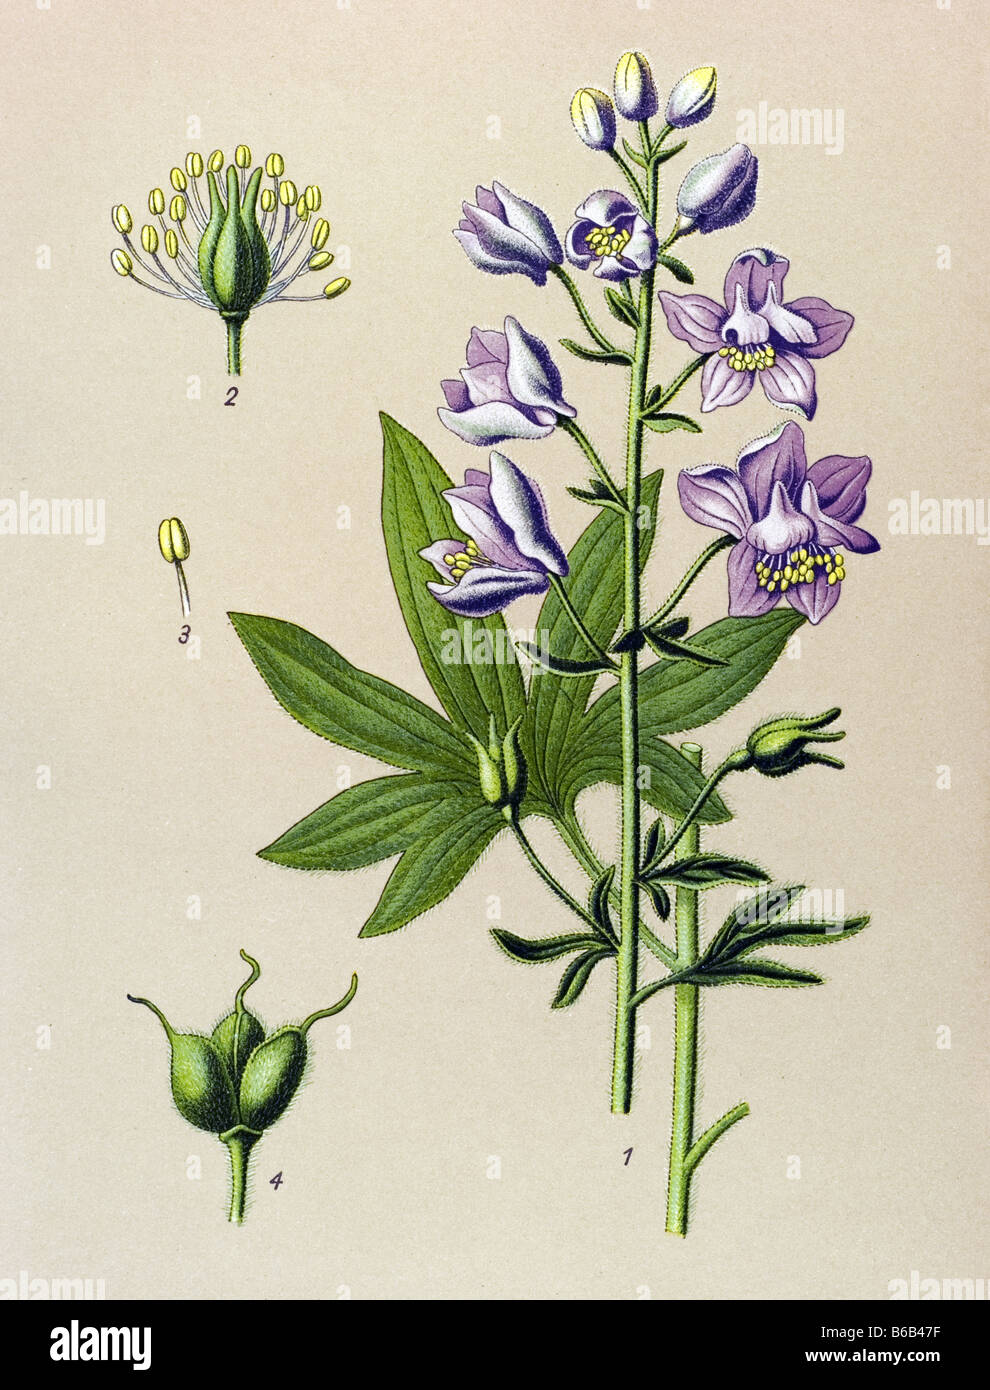 Larkspur, Delphinium Staphysagria, poisonous plants illustrations Stock Photo